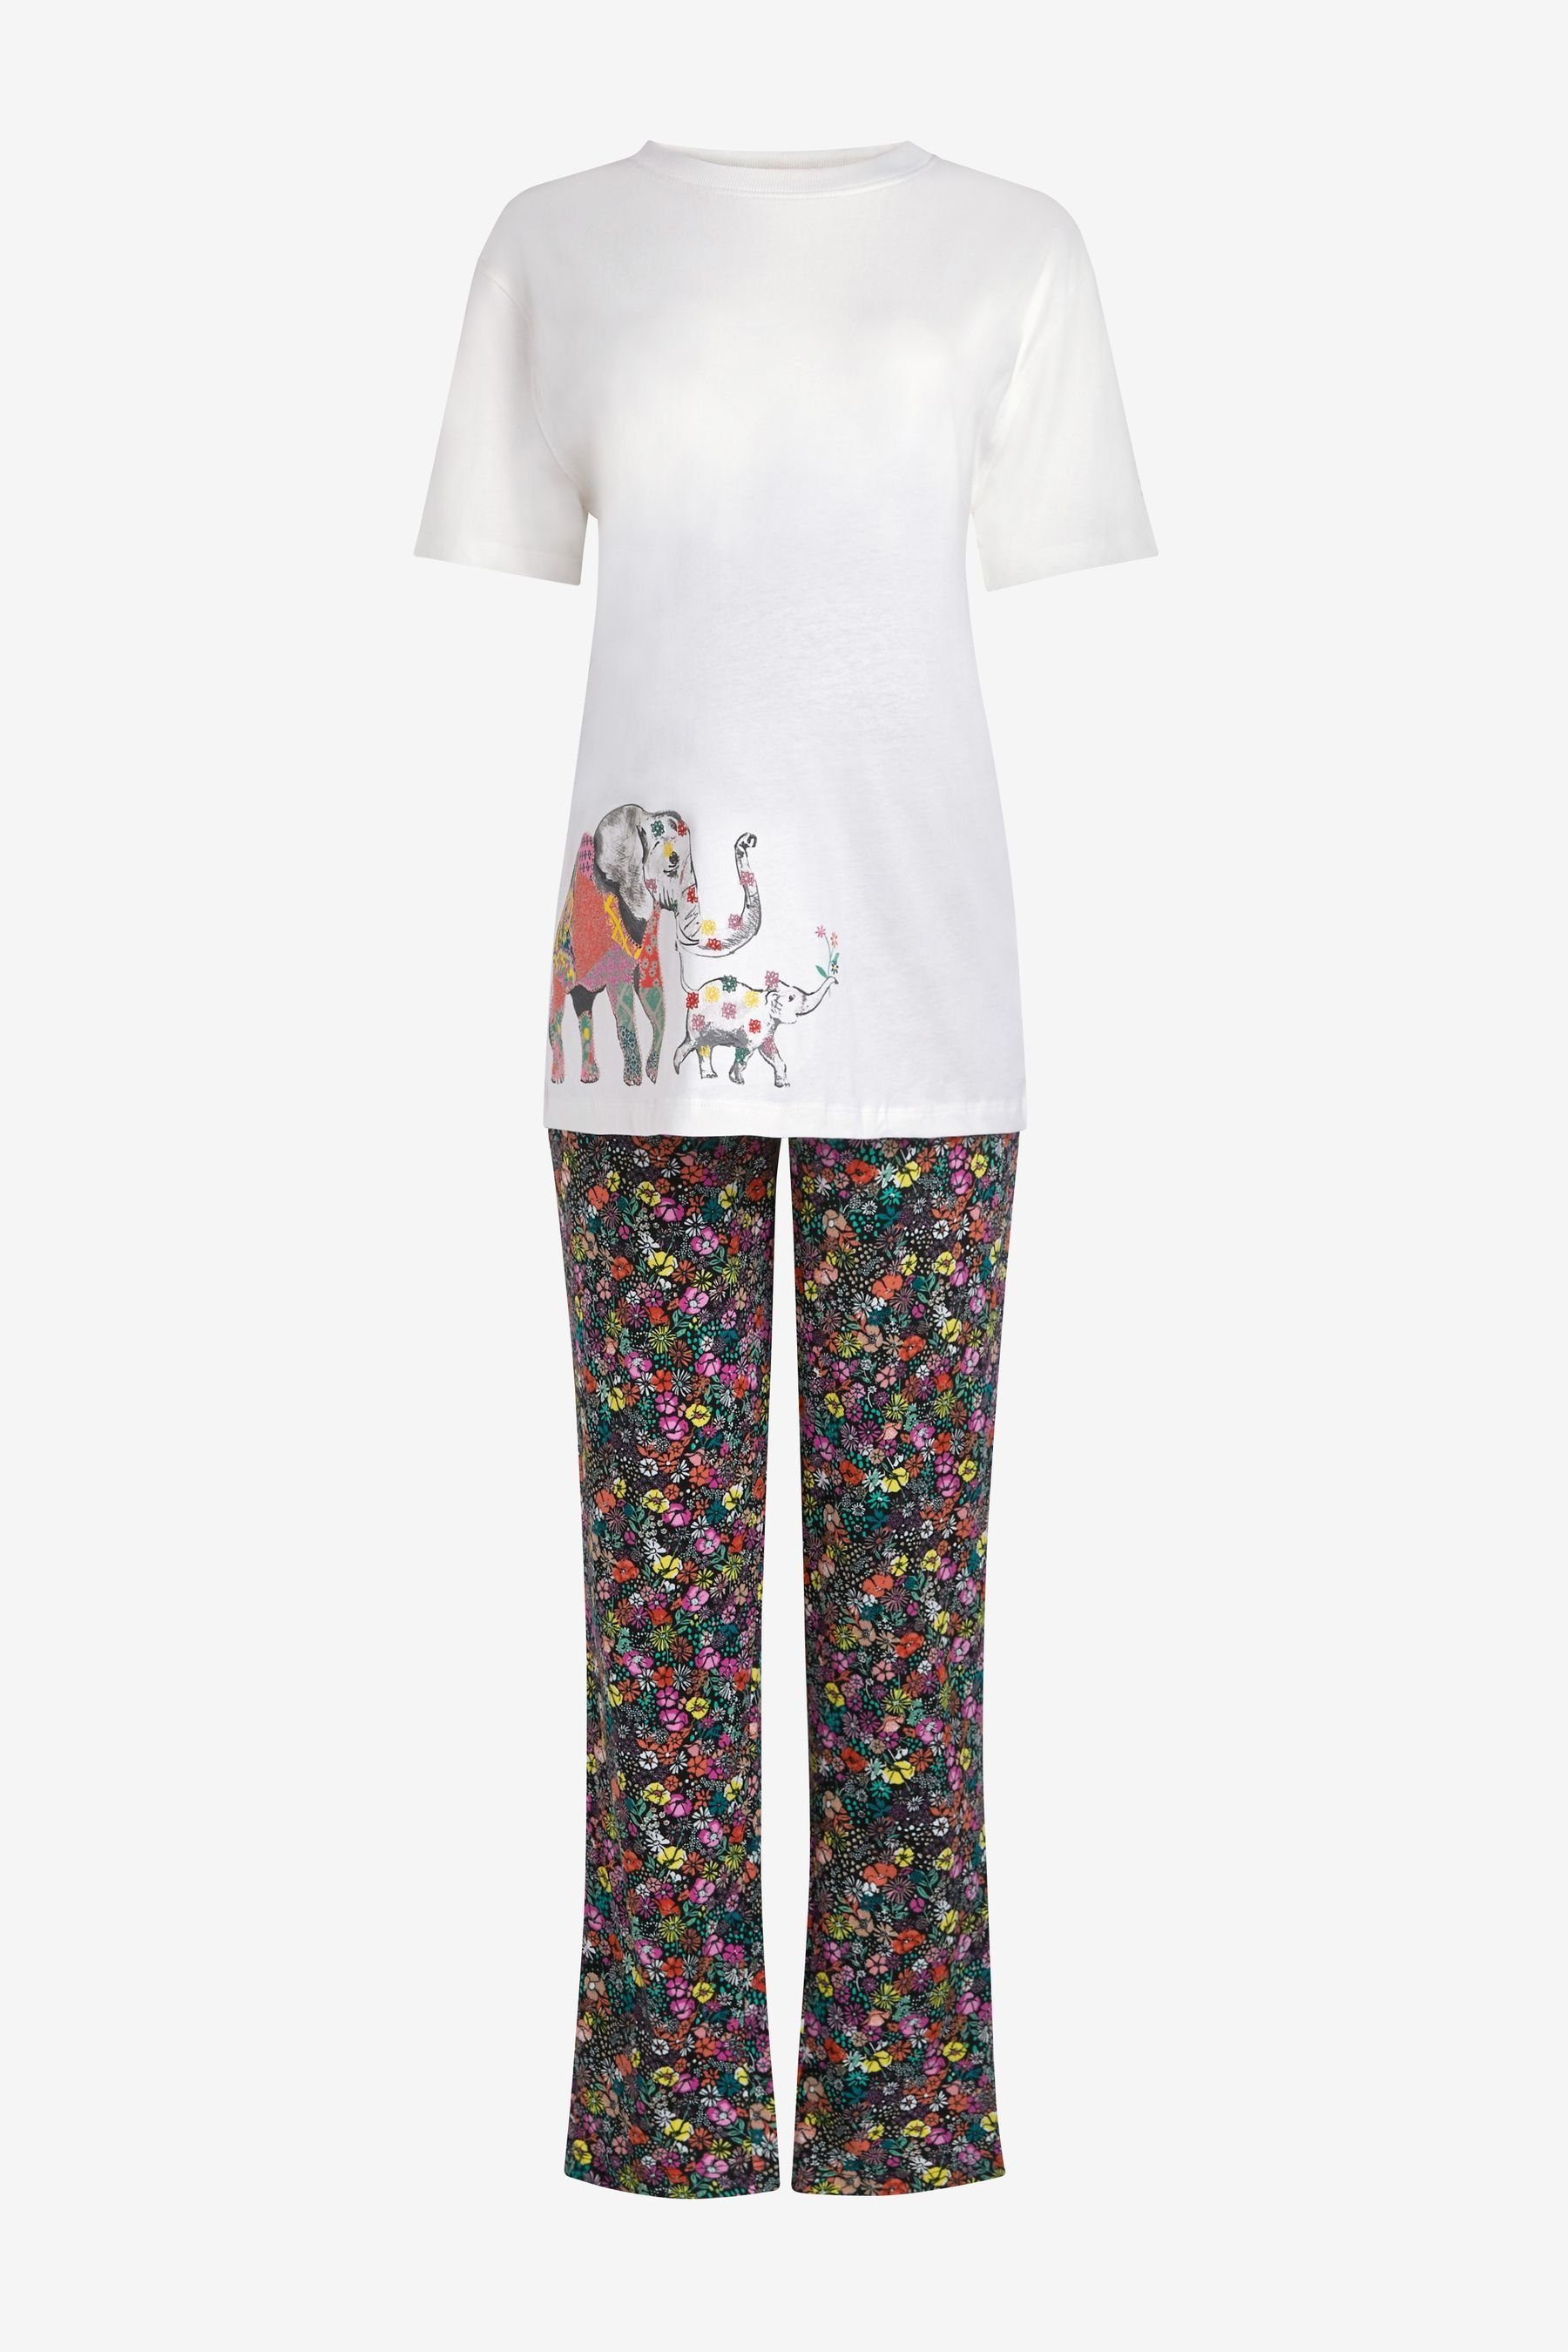 Next Umstandspyjama Kurzärmeliger Baumwoll-Pyjama Umstandsmode (2 tlg),  Mode und Accessoires für die ganze Familie